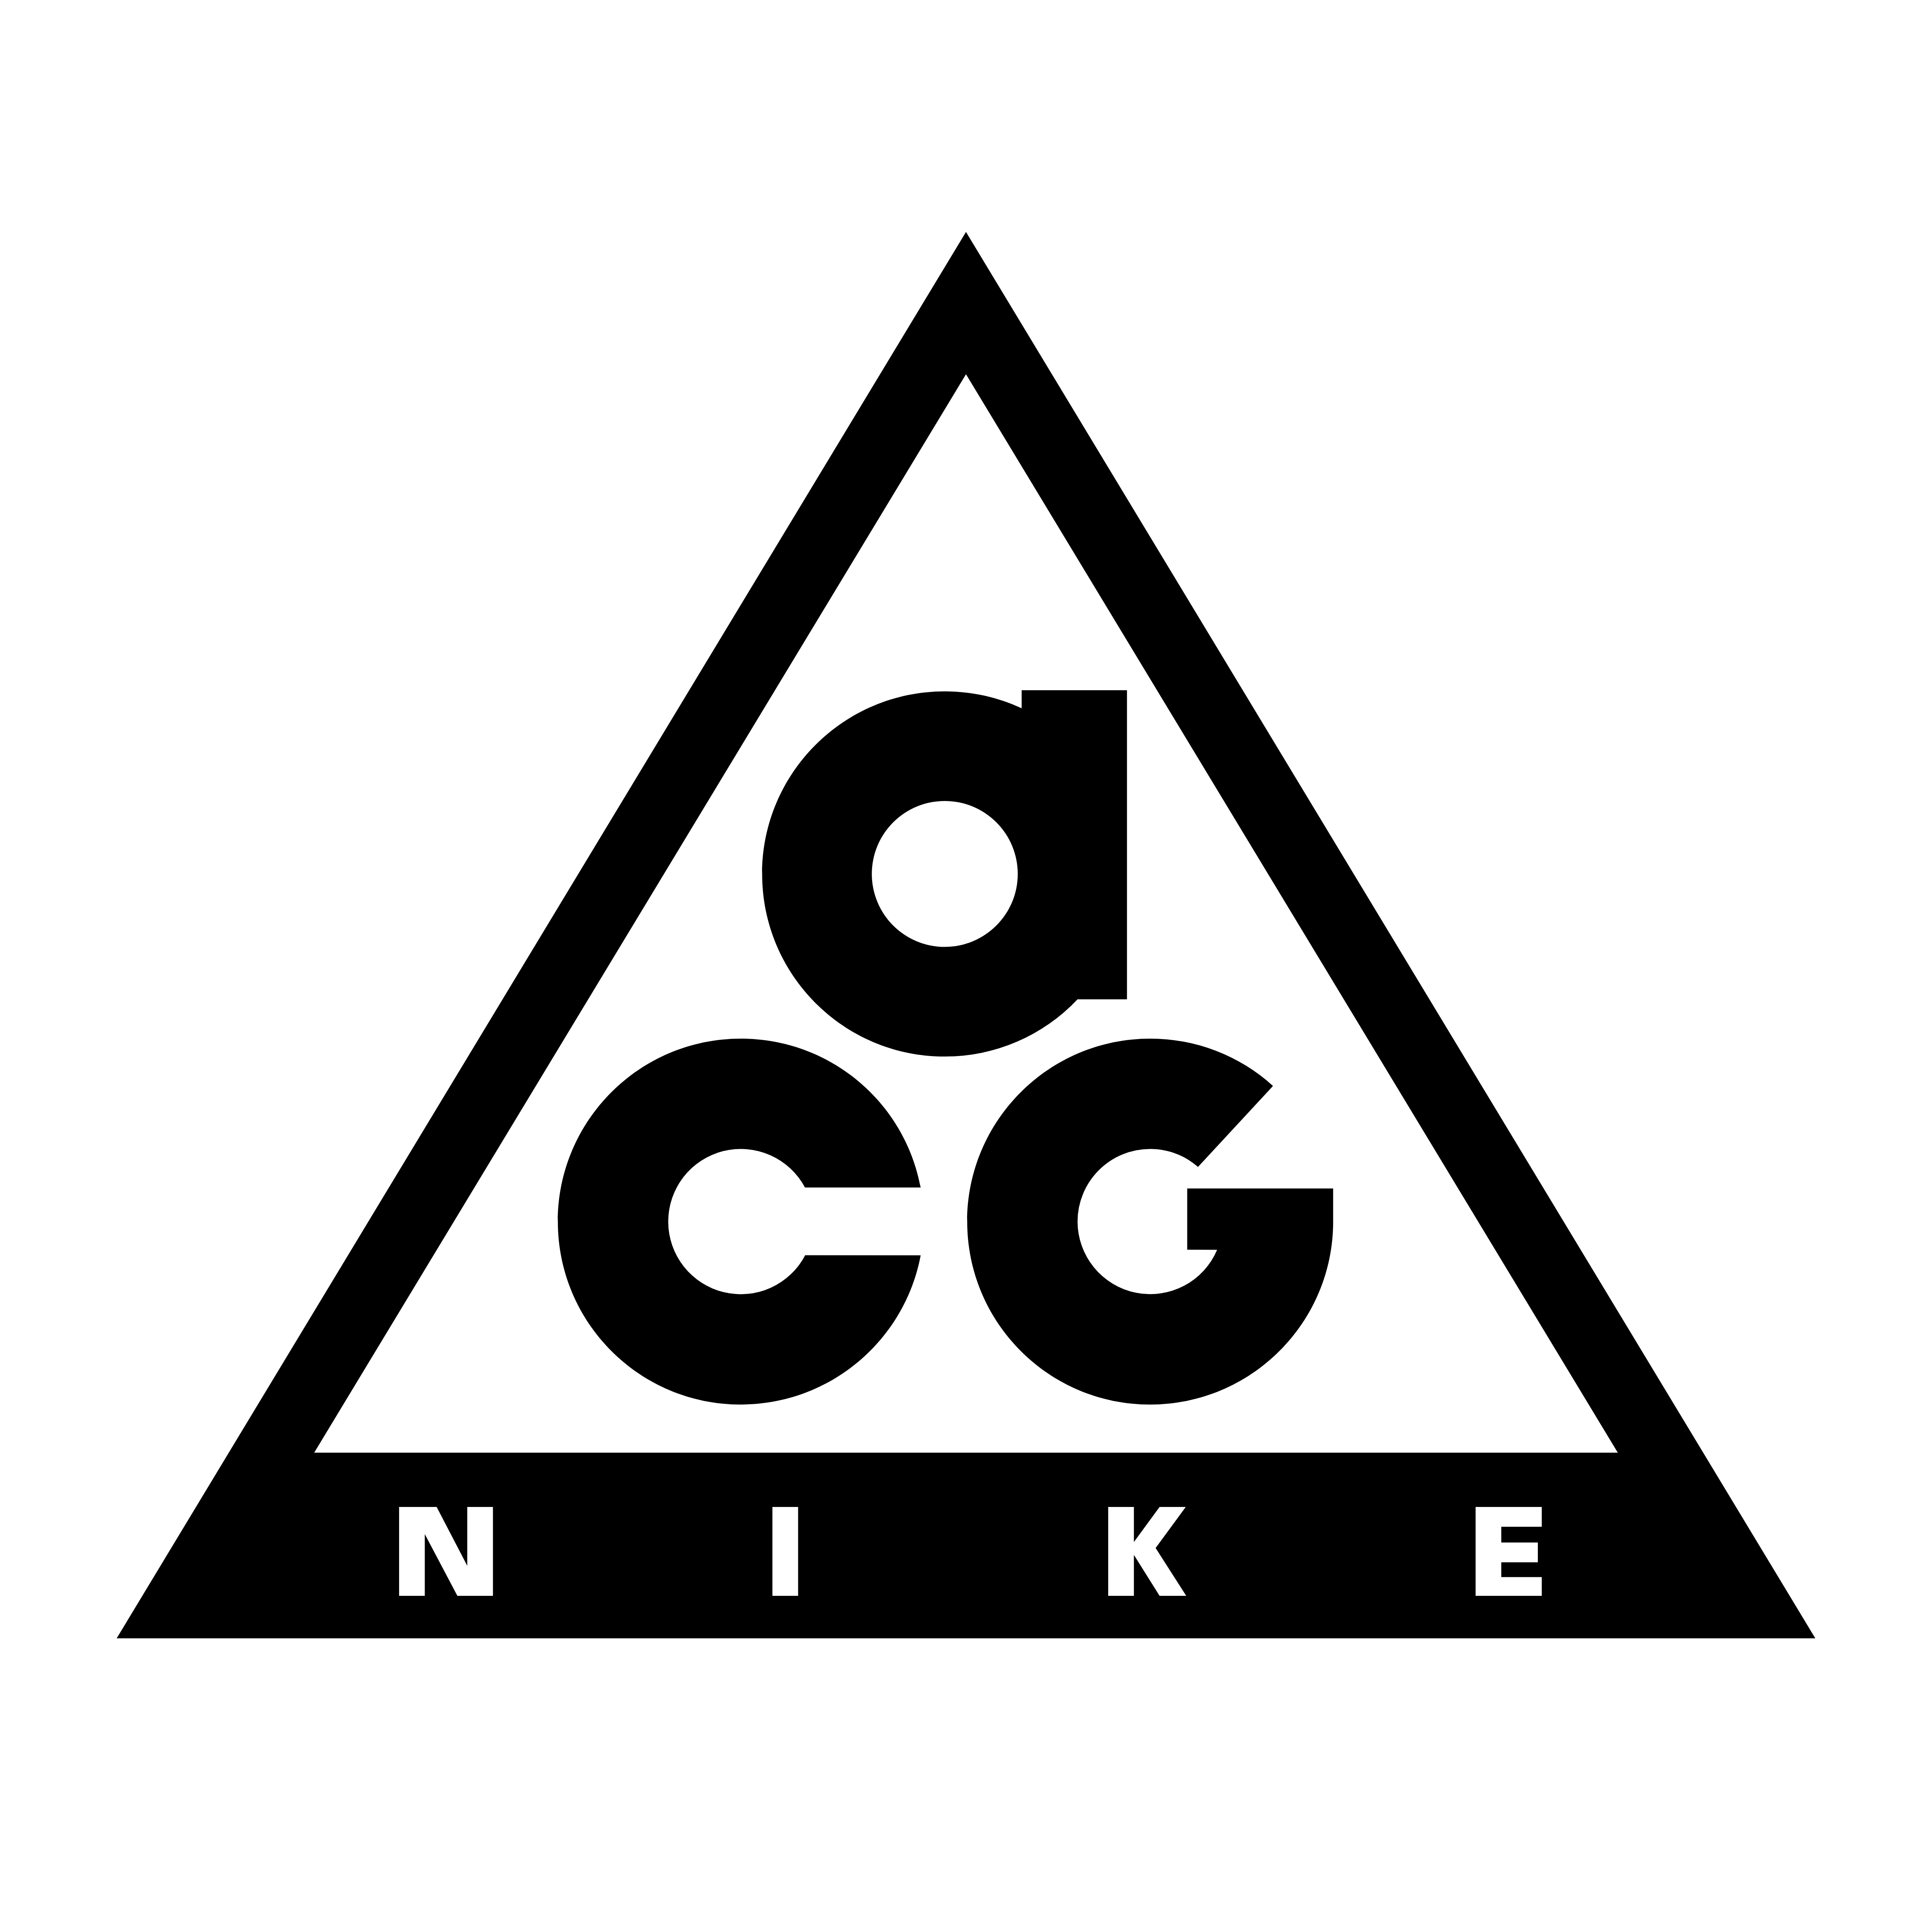 Nike – Logos Download